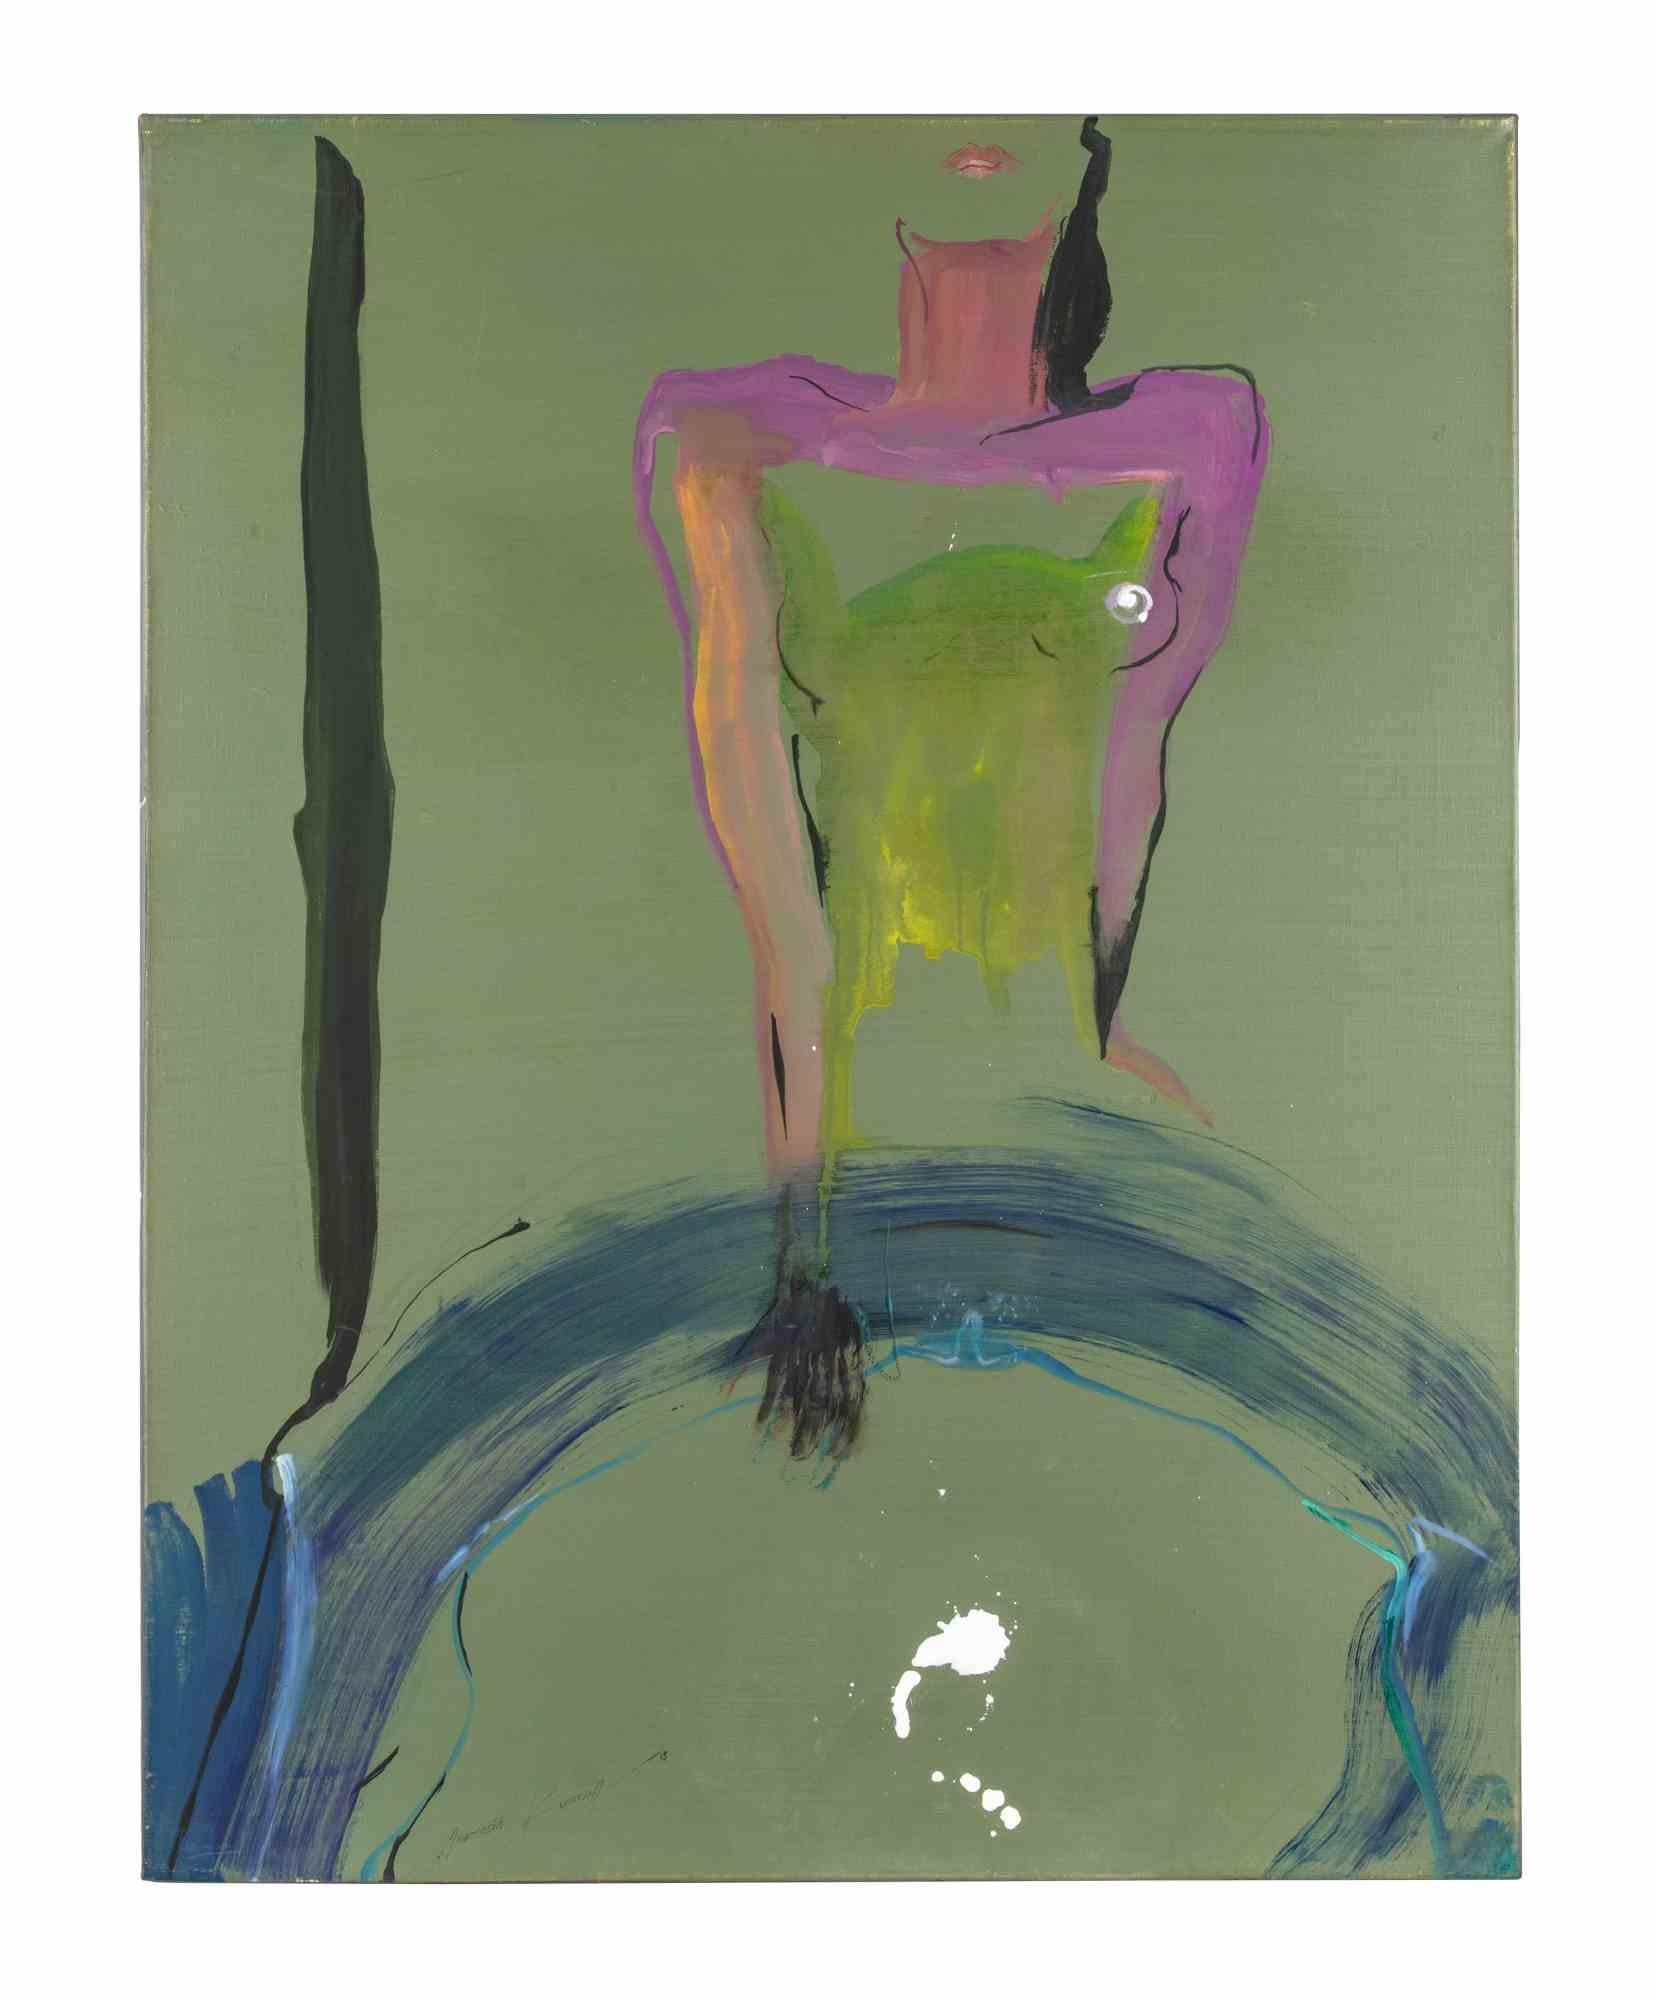 Splash est une peinture à l'huile originale amusante et ironique réalisée en 2015 par Anastasia Kurakina .

Signé et daté à l'encre de Chine rouge dans la marge inférieure gauche.

En bonnes conditions.

Cette œuvre d'art contemporain représente le